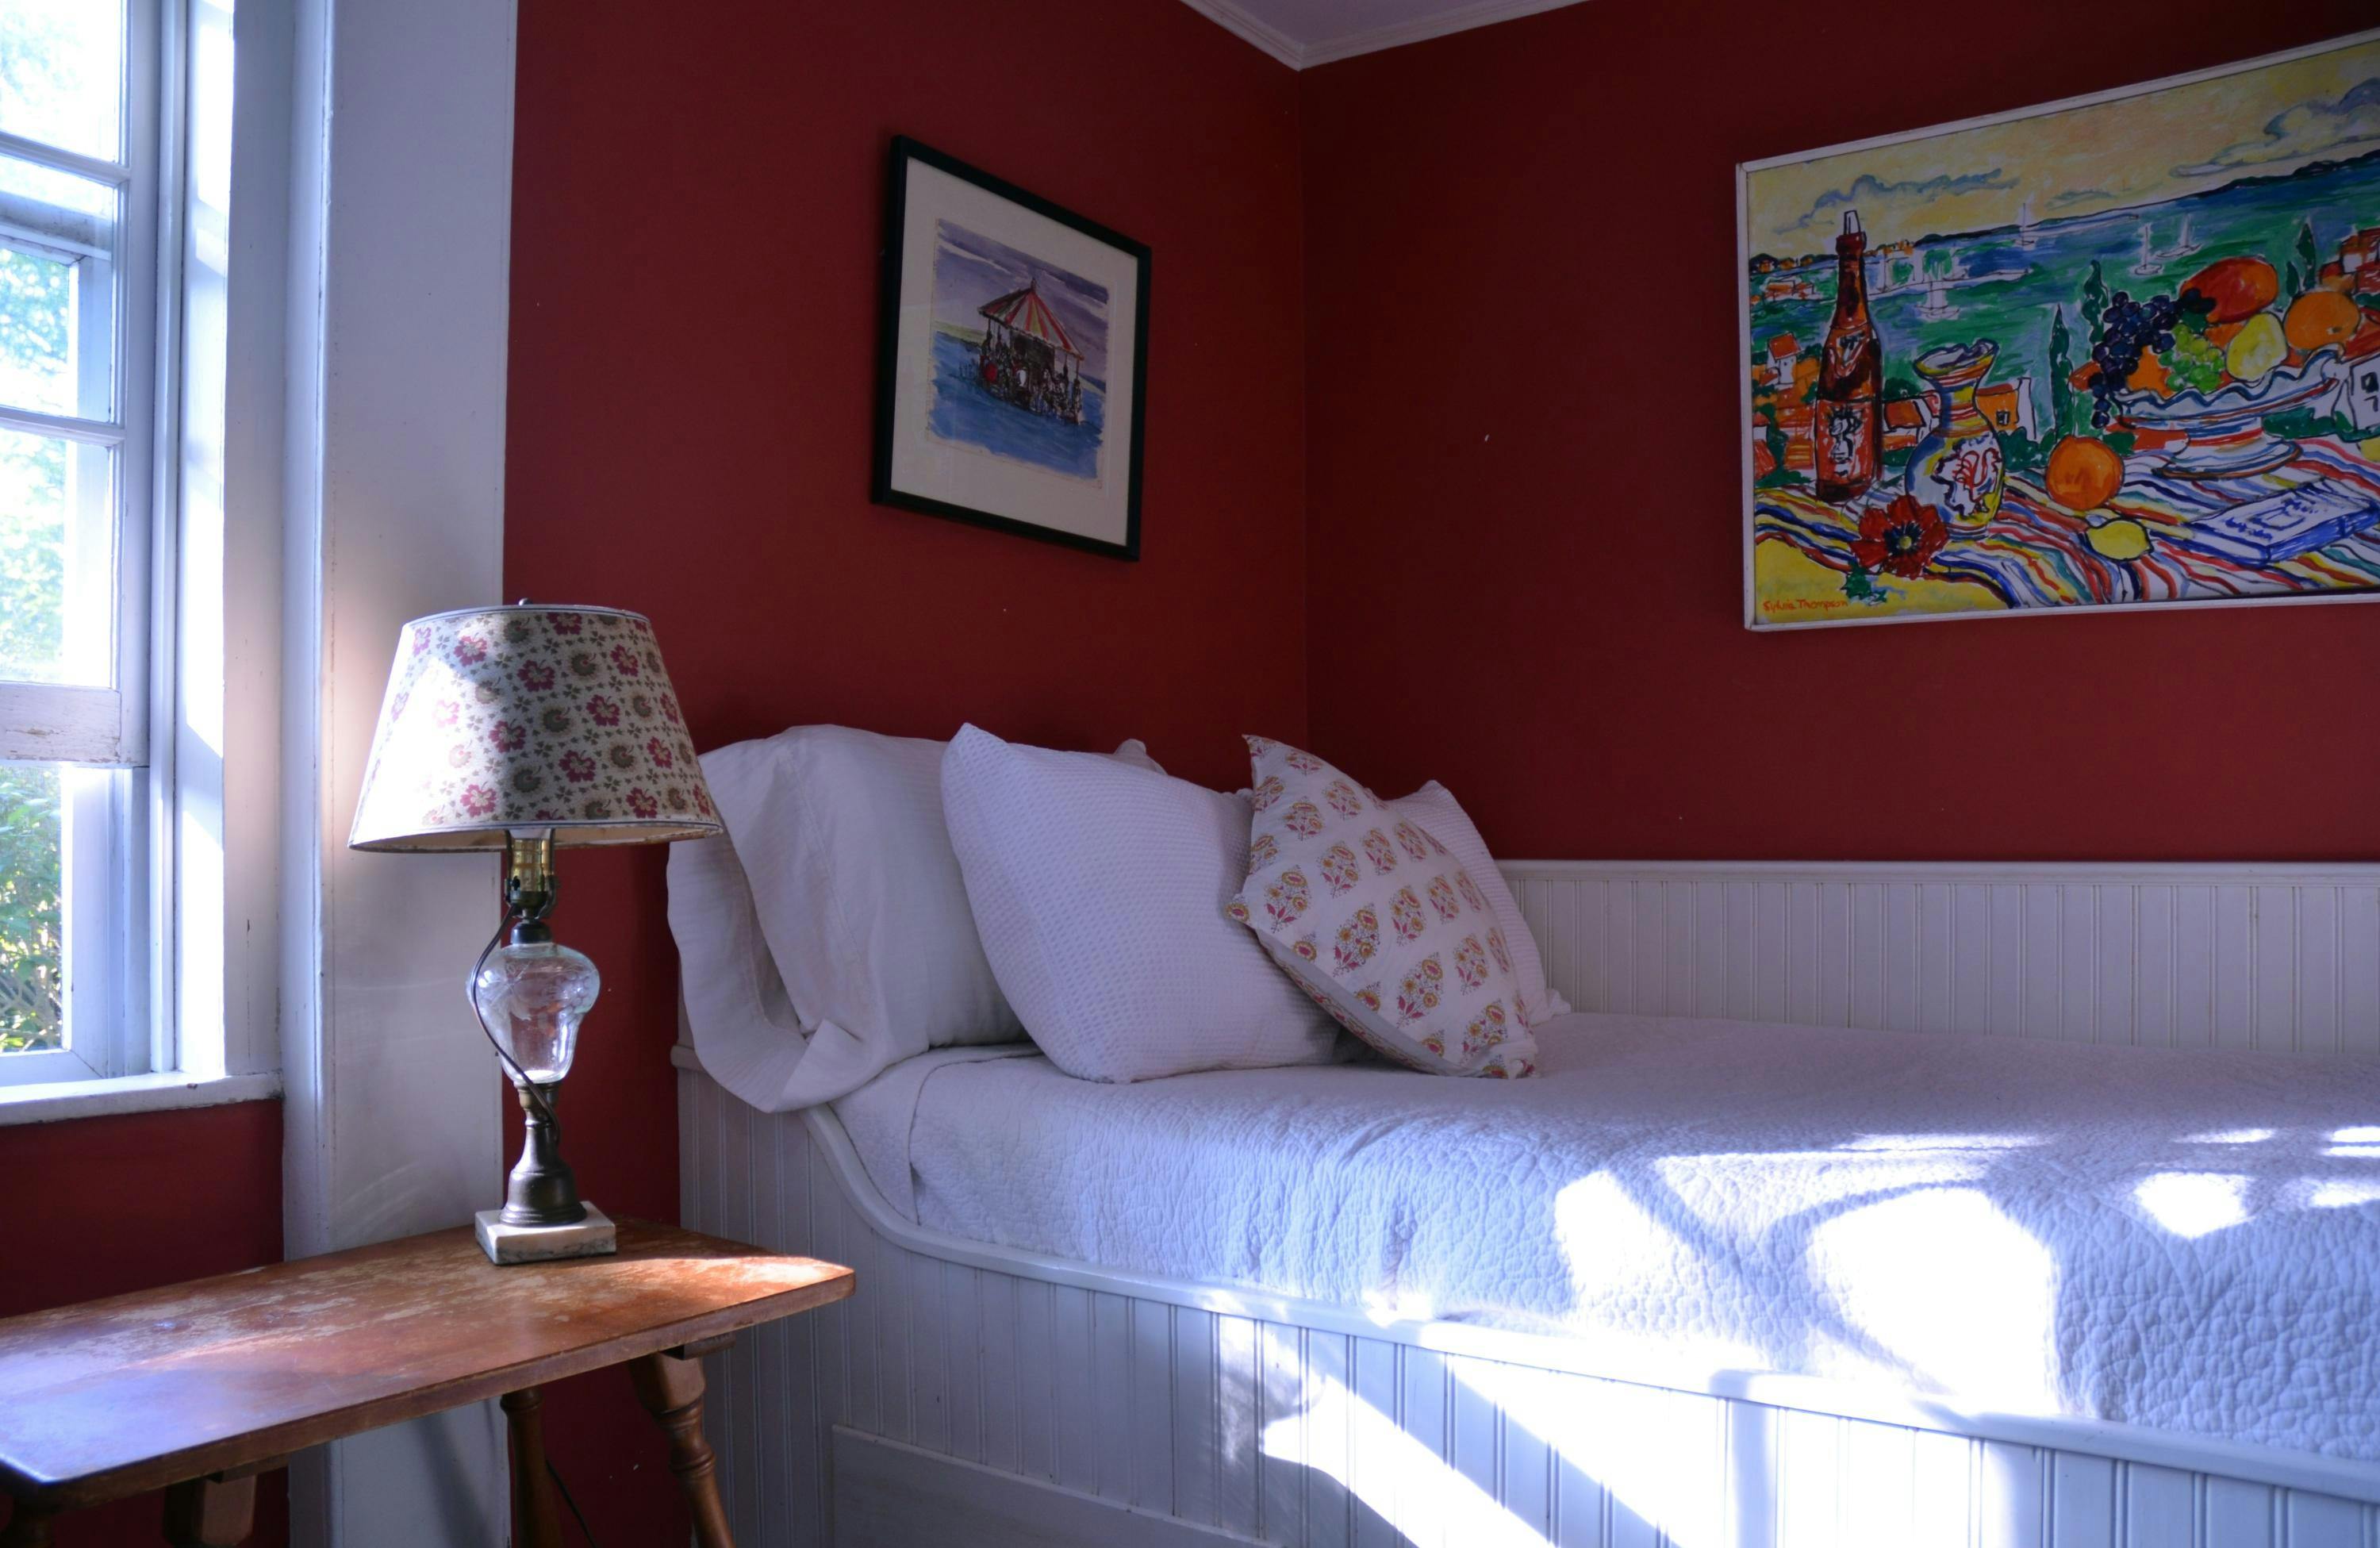 Image 2 - 4 Bedroom Rental in Edgartown, Downtown - Sleeps 5